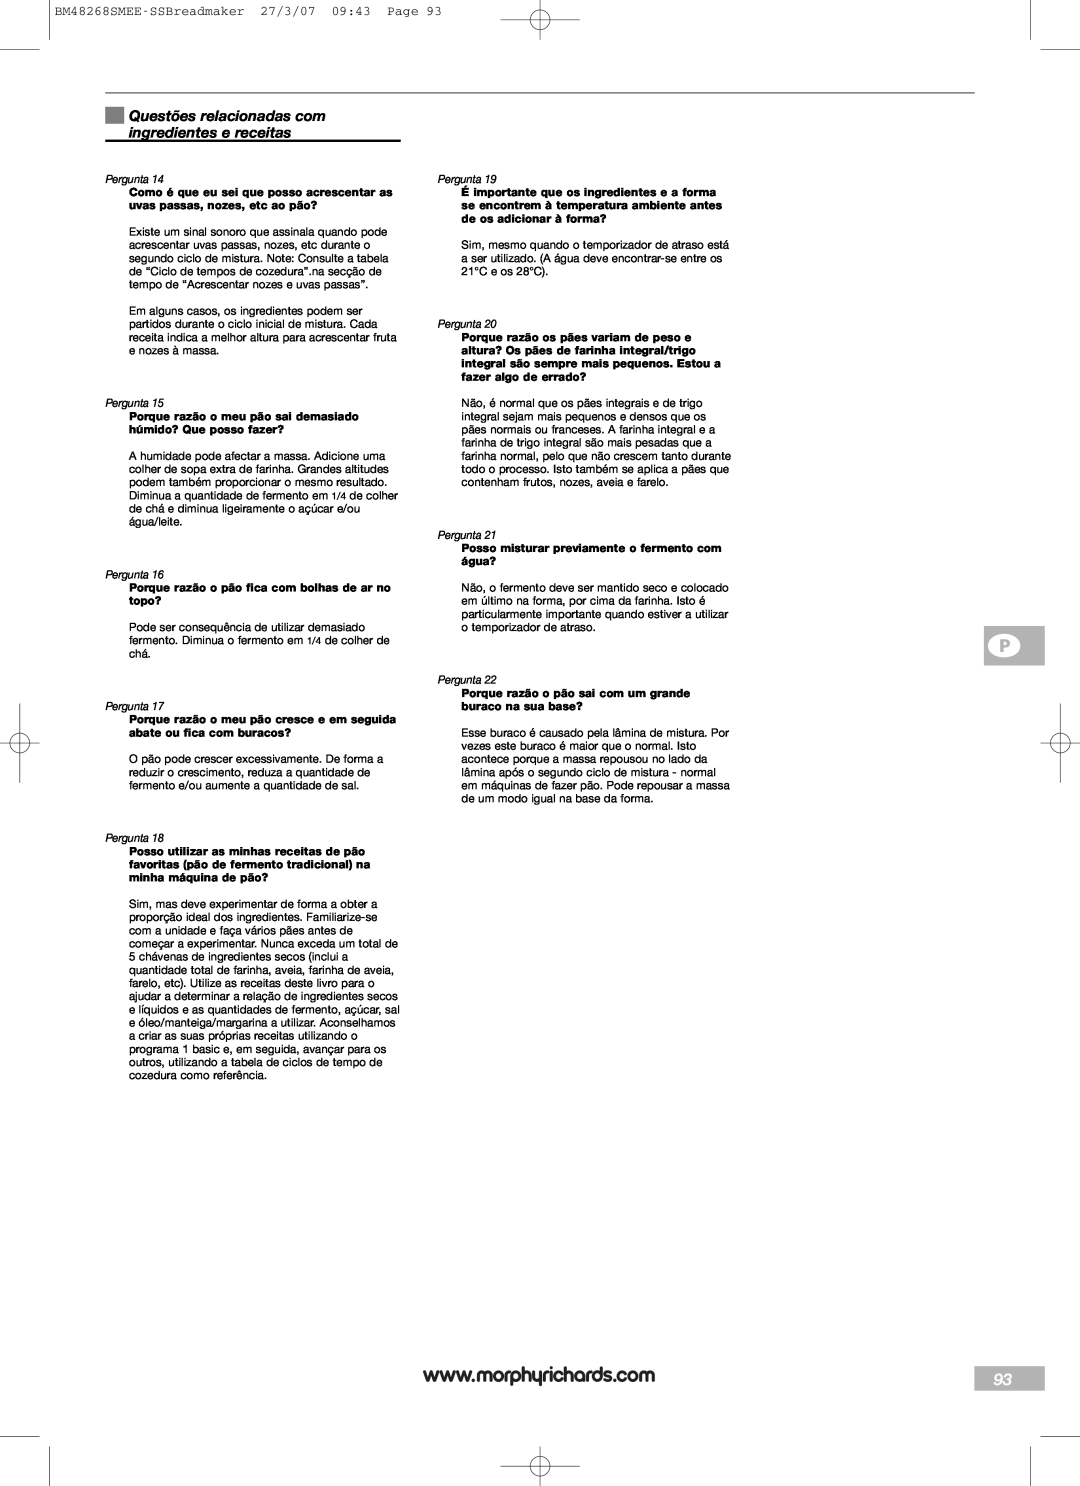 Morphy Richards manual Questões relacionadas com ingredientes e receitas, BM48268SMEE-SSBreadmaker27/3/07 09:43 Page 